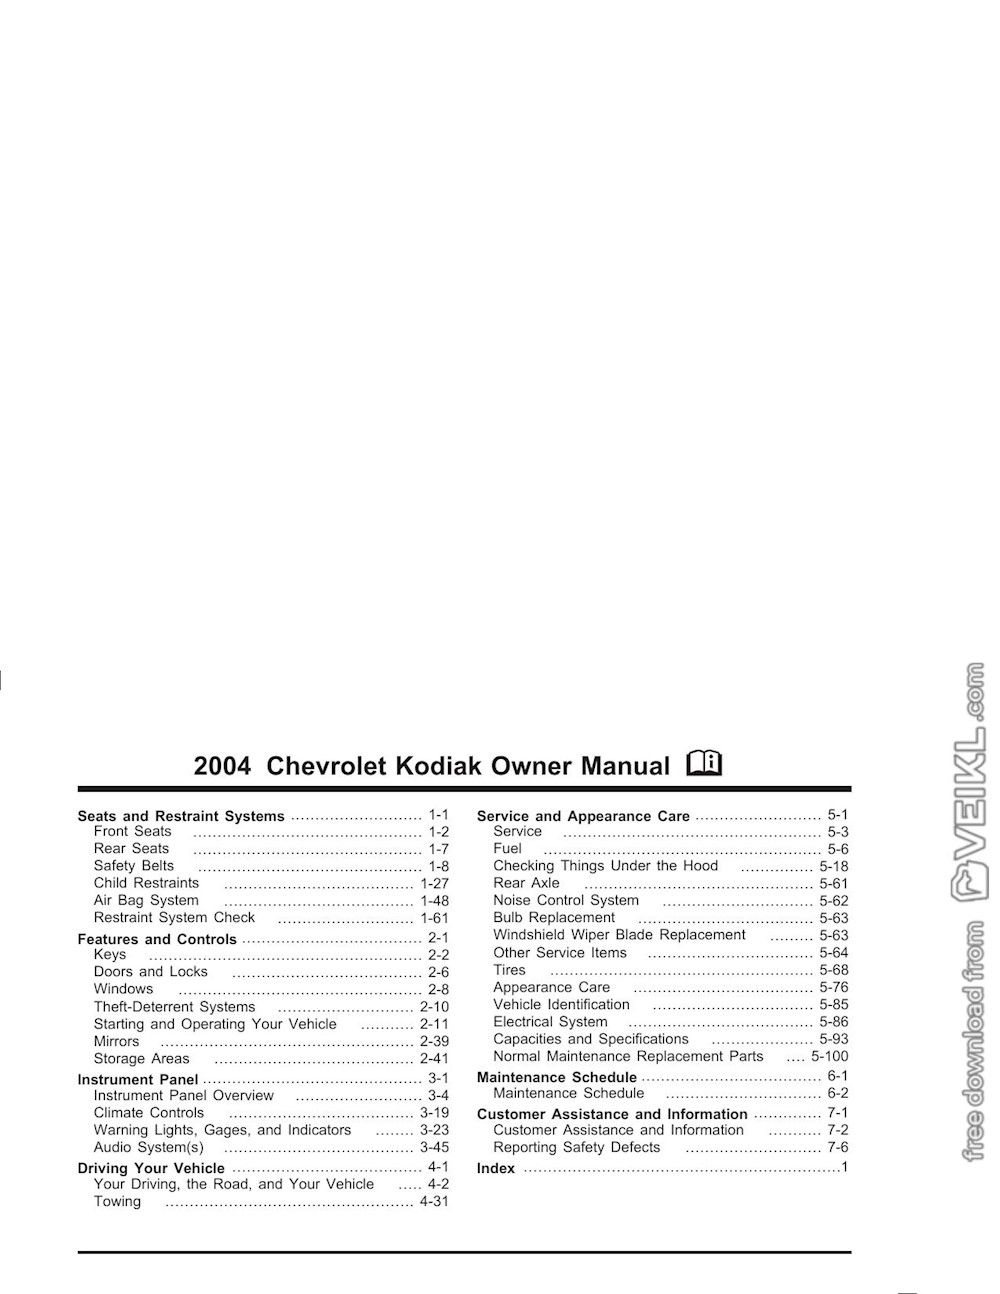 2004 Chevrolet Kodiak Owner's Manual